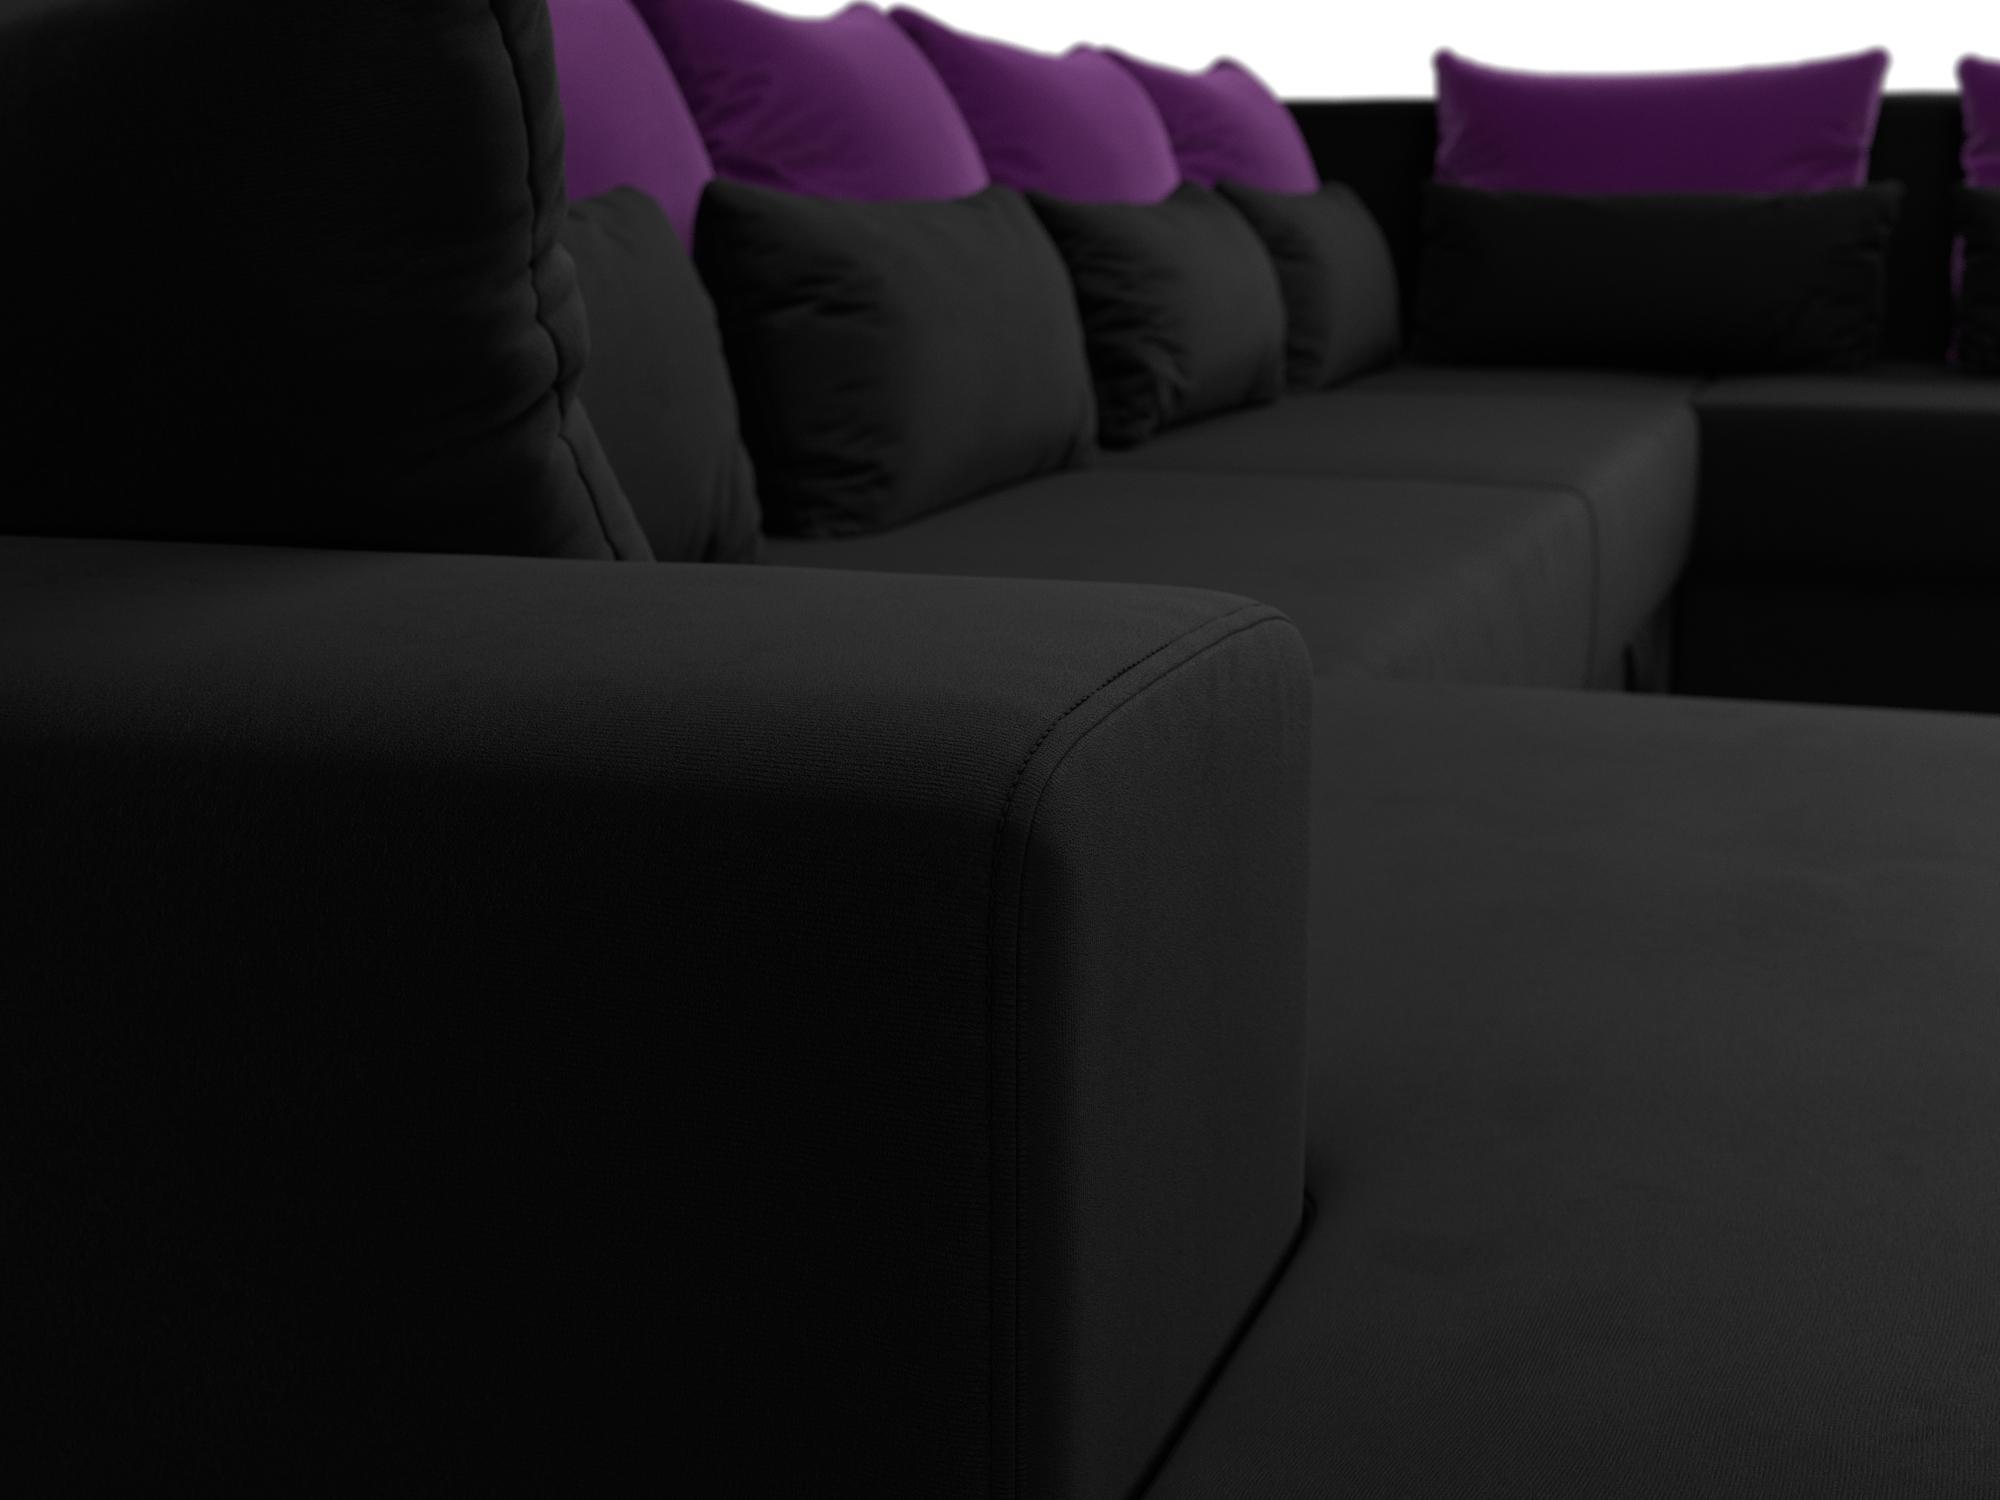 П-образный диван Майами левый угол (Черный\Фиолетовый\Черный)